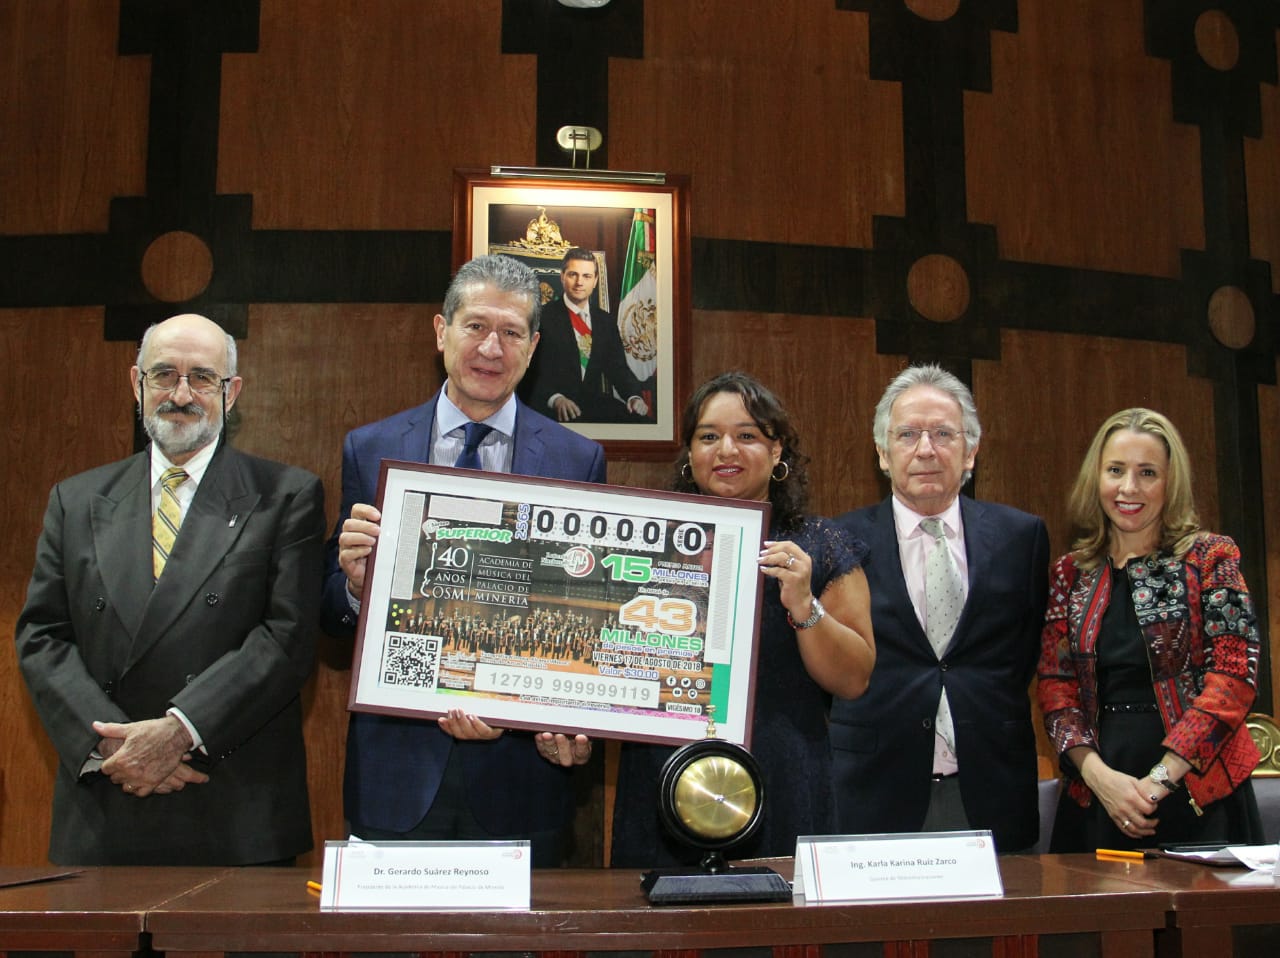 Fotografía donde posan con el billete del Sorteo Superior, de izquierda a derecha: Juan Ursul Solanes, Gerardo Suárez Reynoso, Karla Karina Ruíz Zarco, Rolando Zárate Rocha y Alejandra Barreto Sosa.